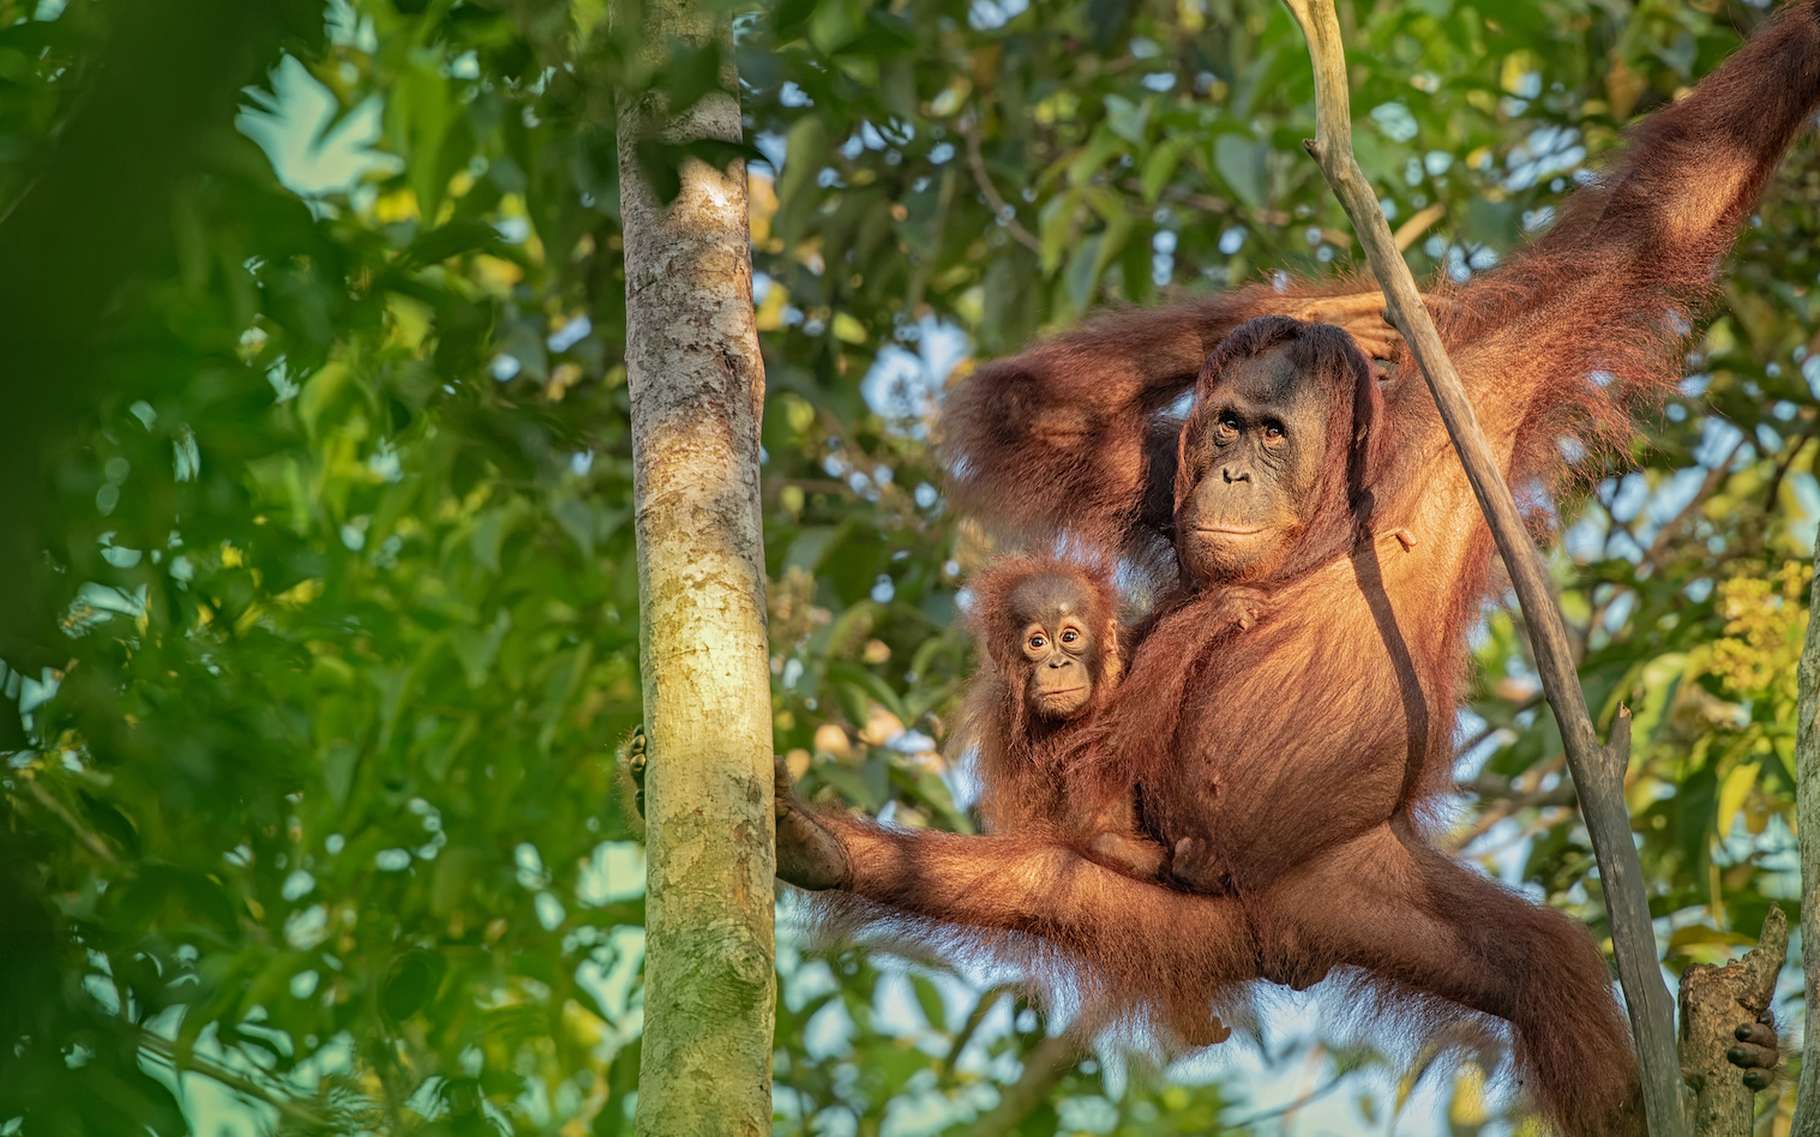 Les petits orangs-outans restent pendant près de neuf ans en compagnie de leur maman. Le temps qu’elles leur apprennent comment profiter de toutes les sources de nourriture disponibles autour d’eux. Pas si bête, ce grand singe ! © Lukas, Adobe Stock